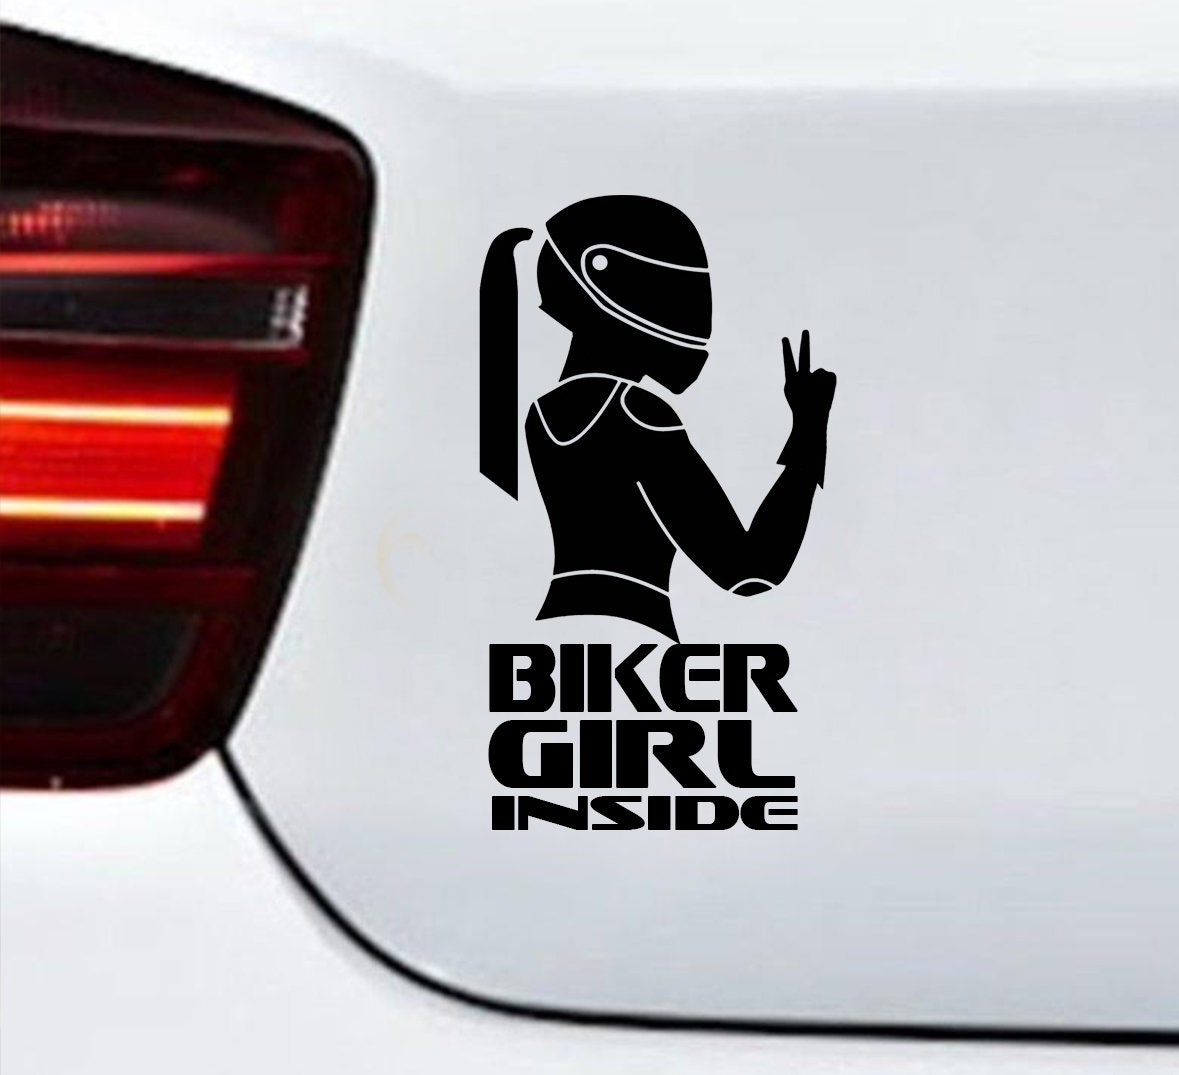 Motorrad Aufkleber Komplettset - Japan Biker - style your bike!